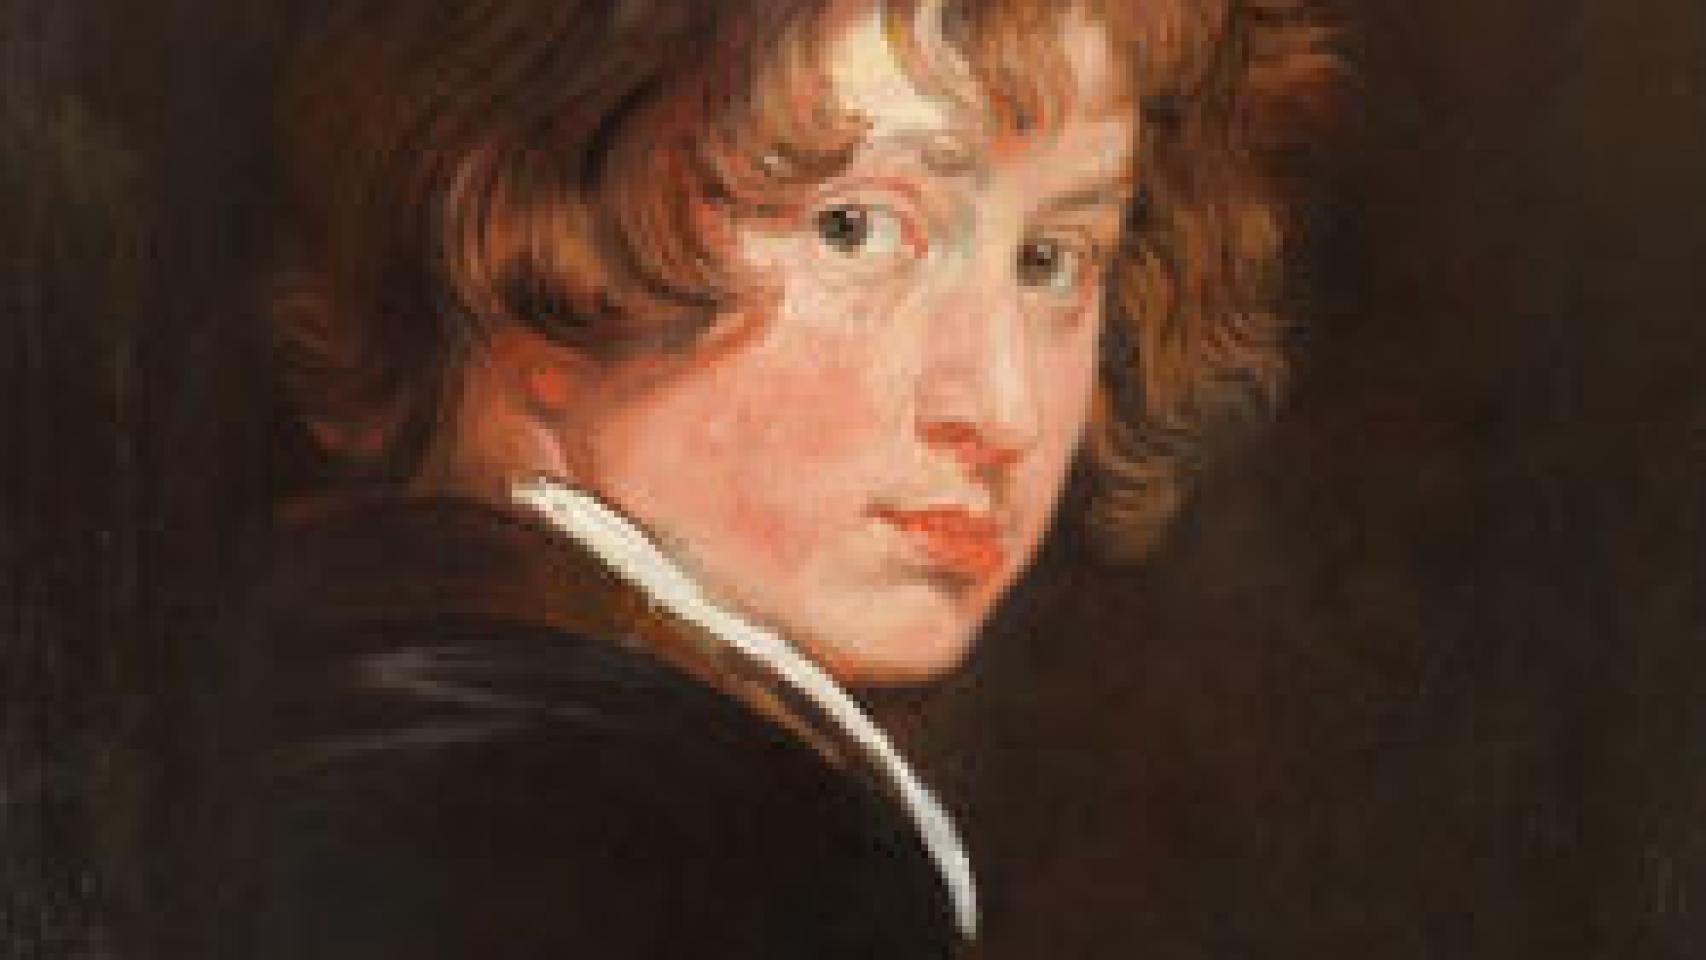 Image: Precoz Van Dyck